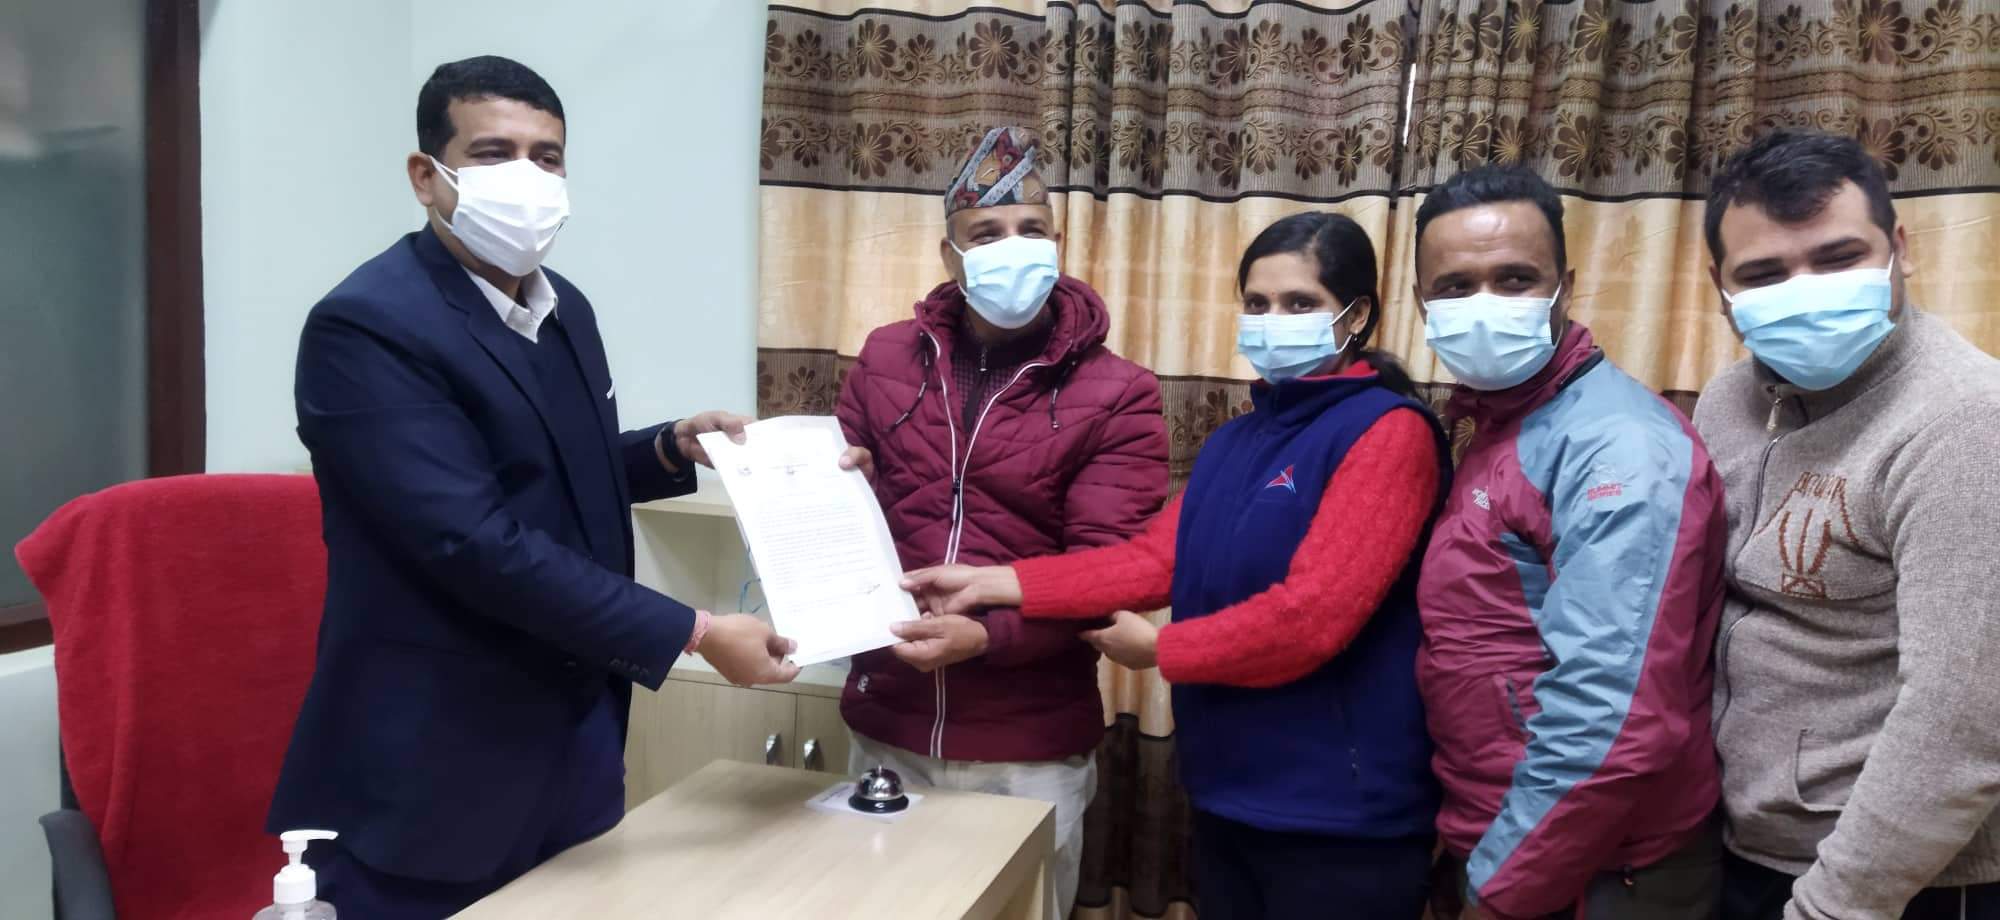 लुम्बिनी प्रादेशिक अस्पतालले कोरोना संक्रमित पत्रकारको निःशुल्क उपचार गर्ने